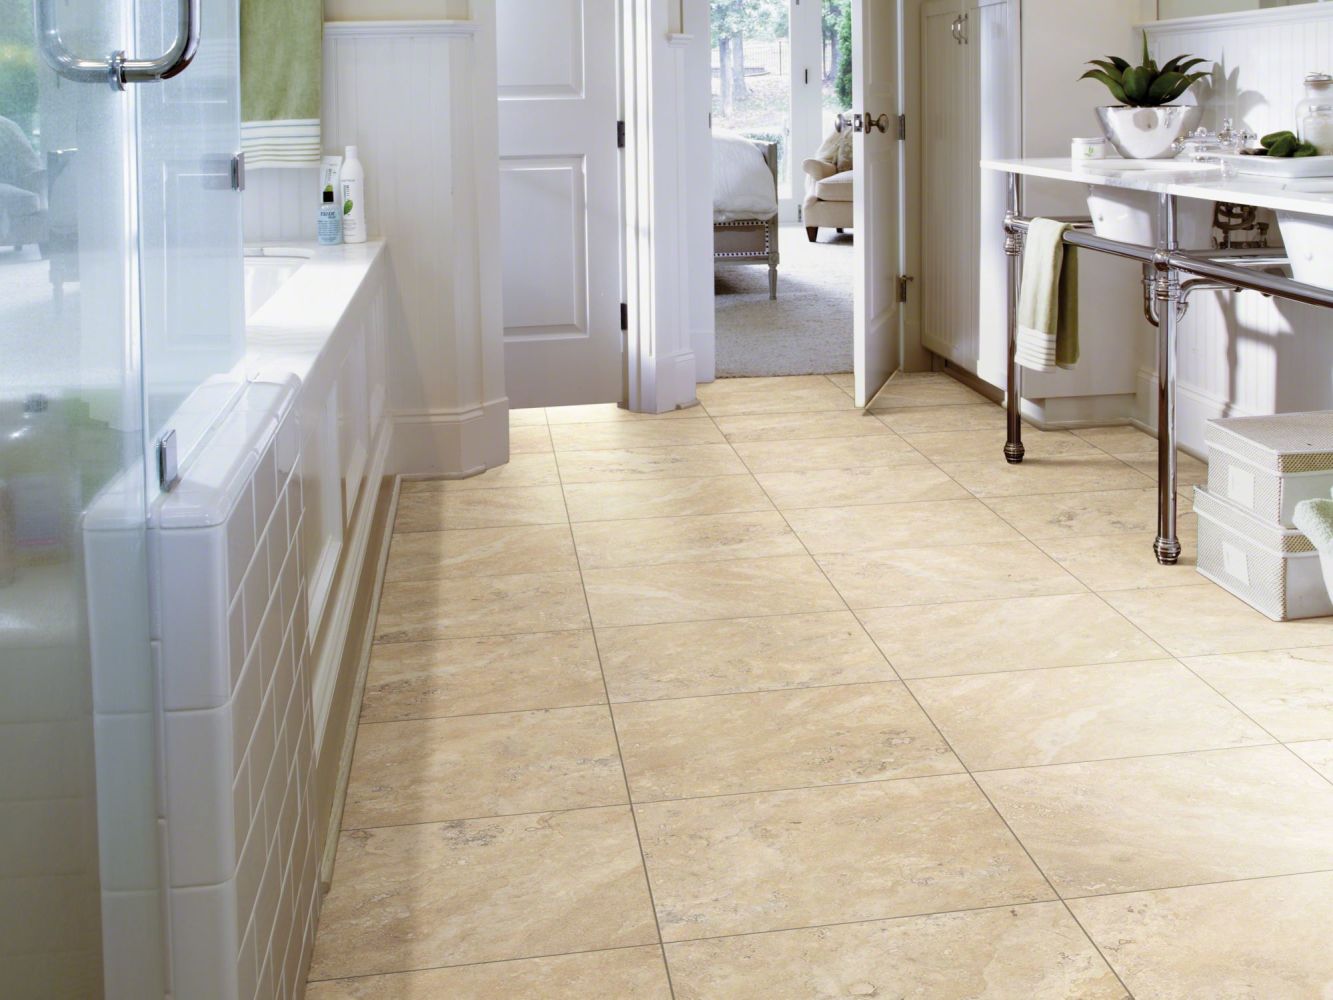 Shaw Floors Resilient Residential Resort Tile Sunlit Sand 00110_0189V